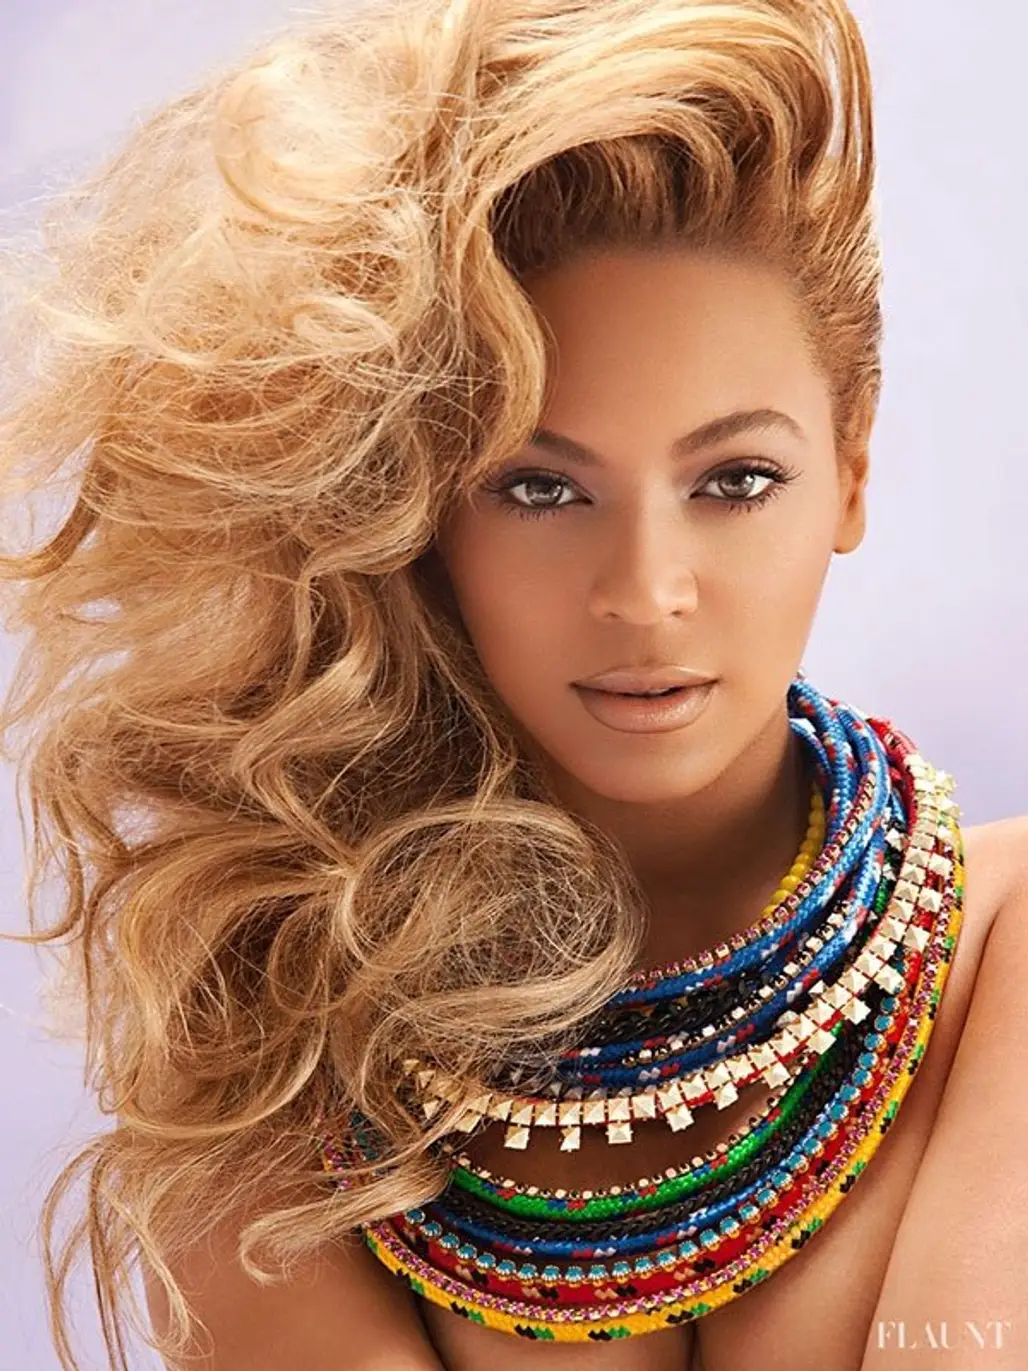 Beyonce's Tumblr "I Am"